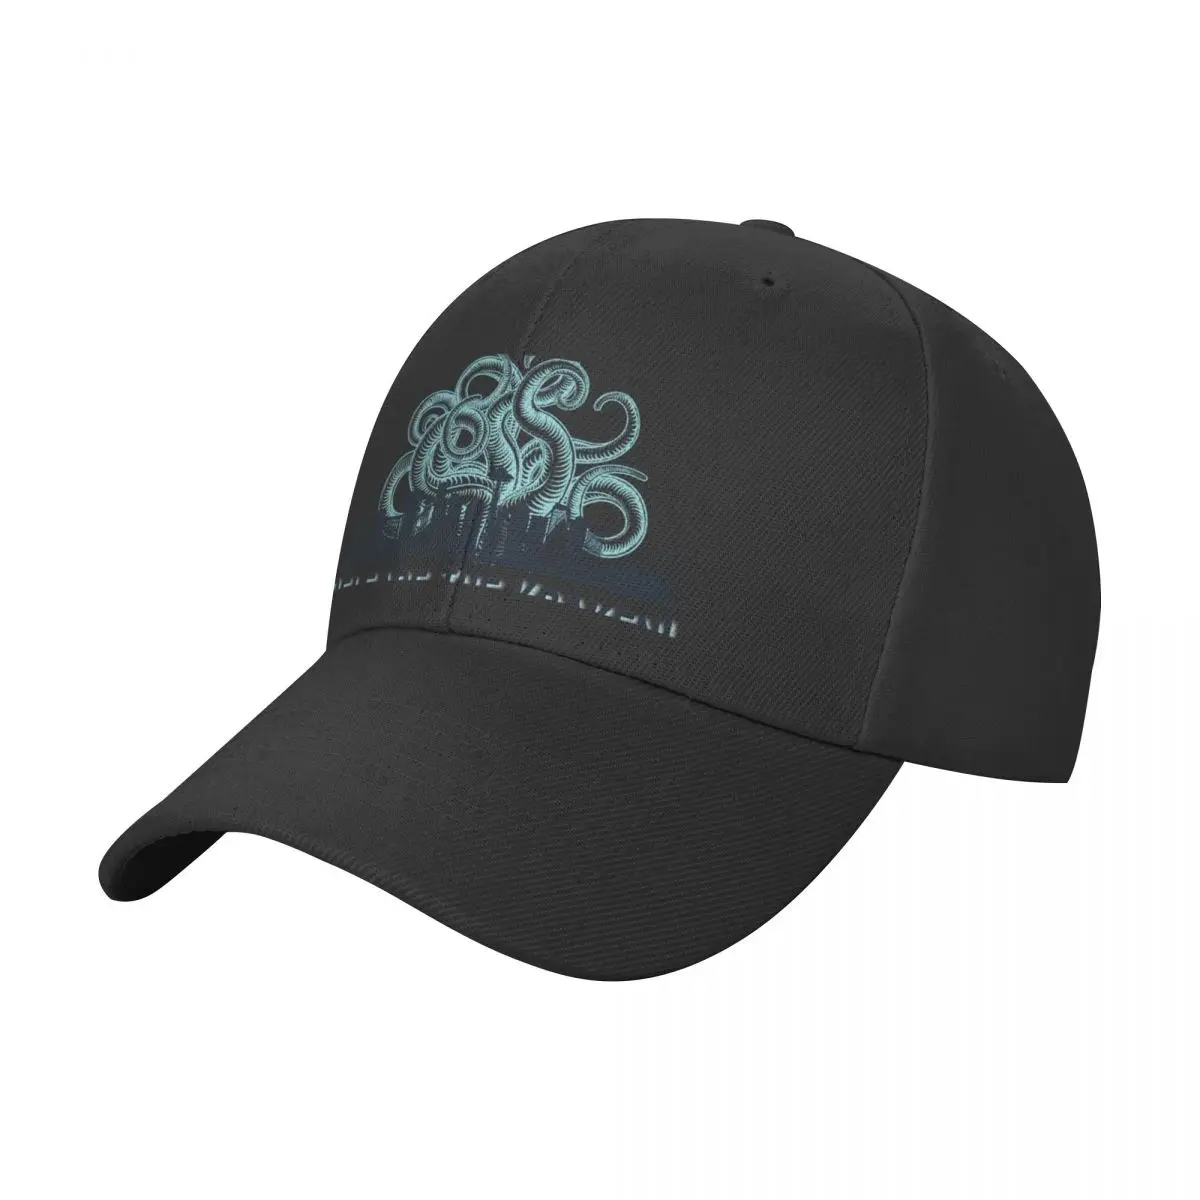 

Release The Kraken! Seattle Kraken Design. Go Kraken! Baseball Cap sun hat party Hat Trucker Cap Hats For Men Women's